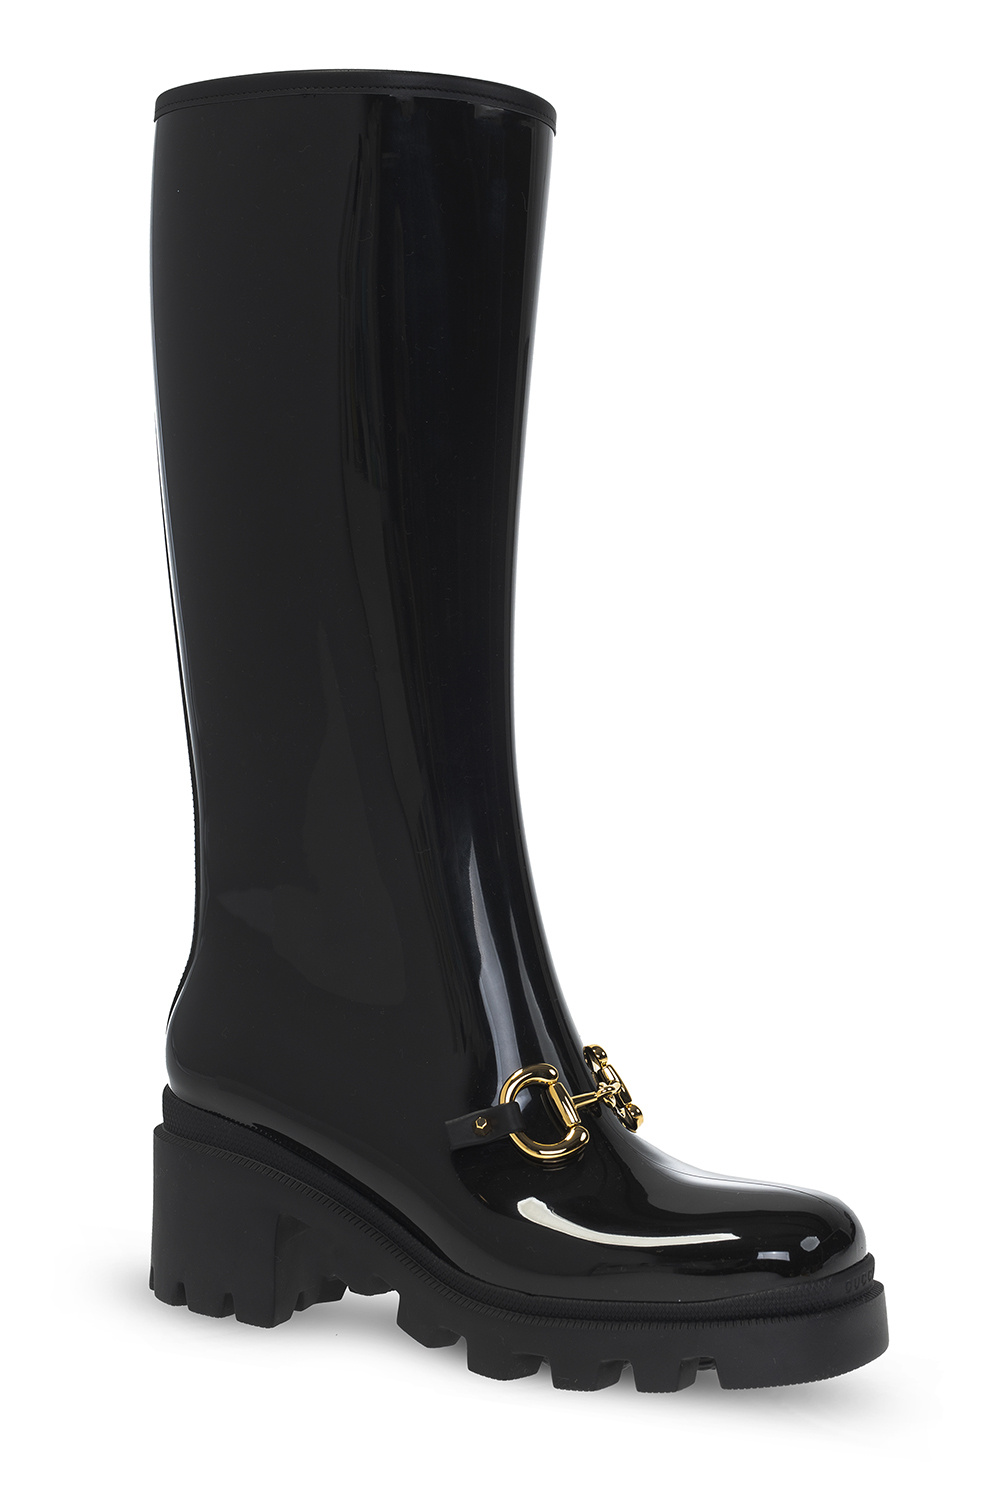 Gucci Horsebit rain boots